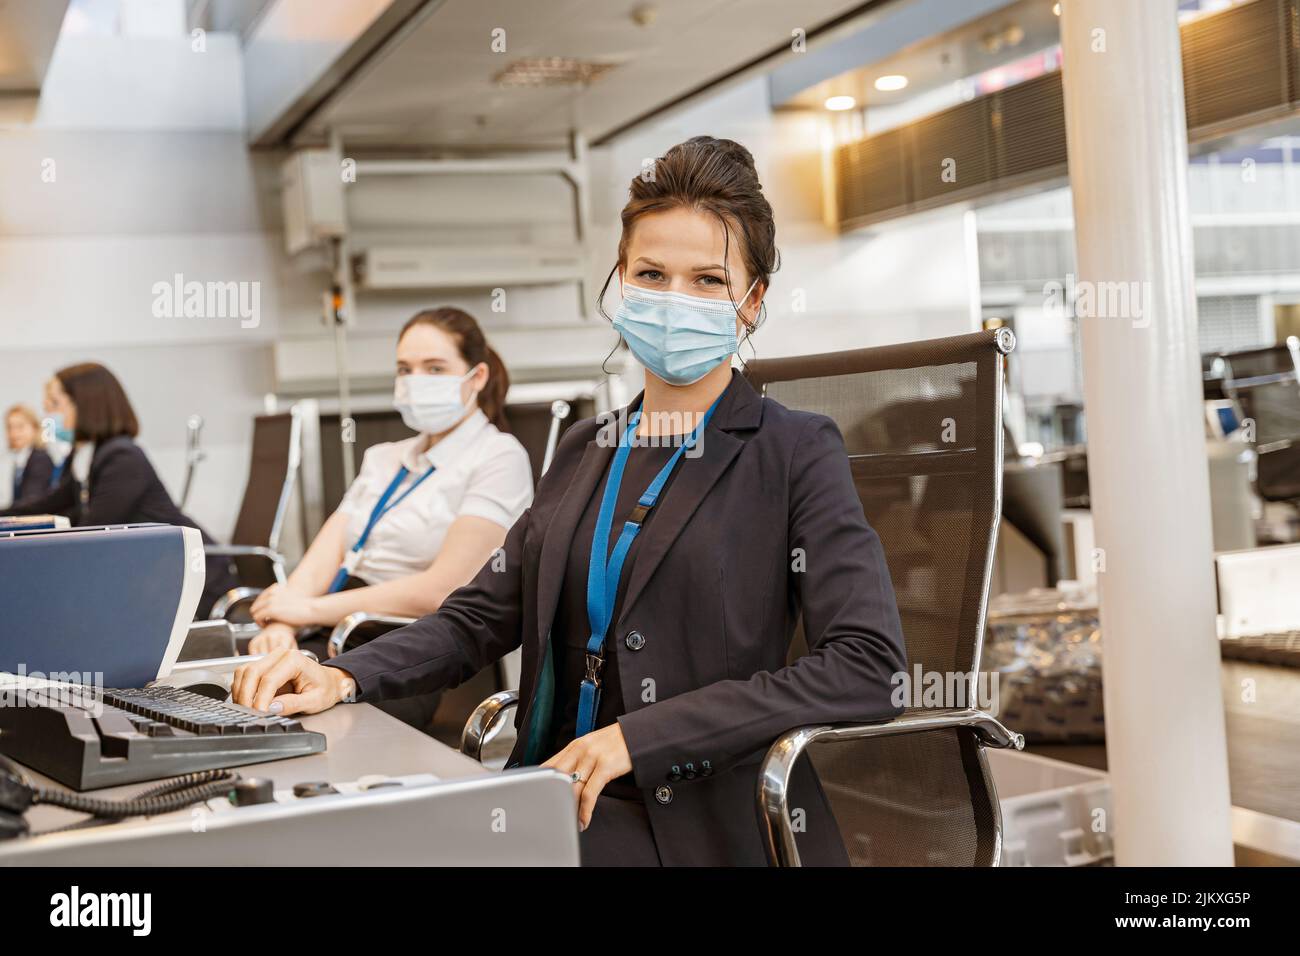 Donna dipendente della compagnia aerea che indossa la maschera facciale mentre lavora al banco check-in della compagnia aerea in aeroporto Foto Stock